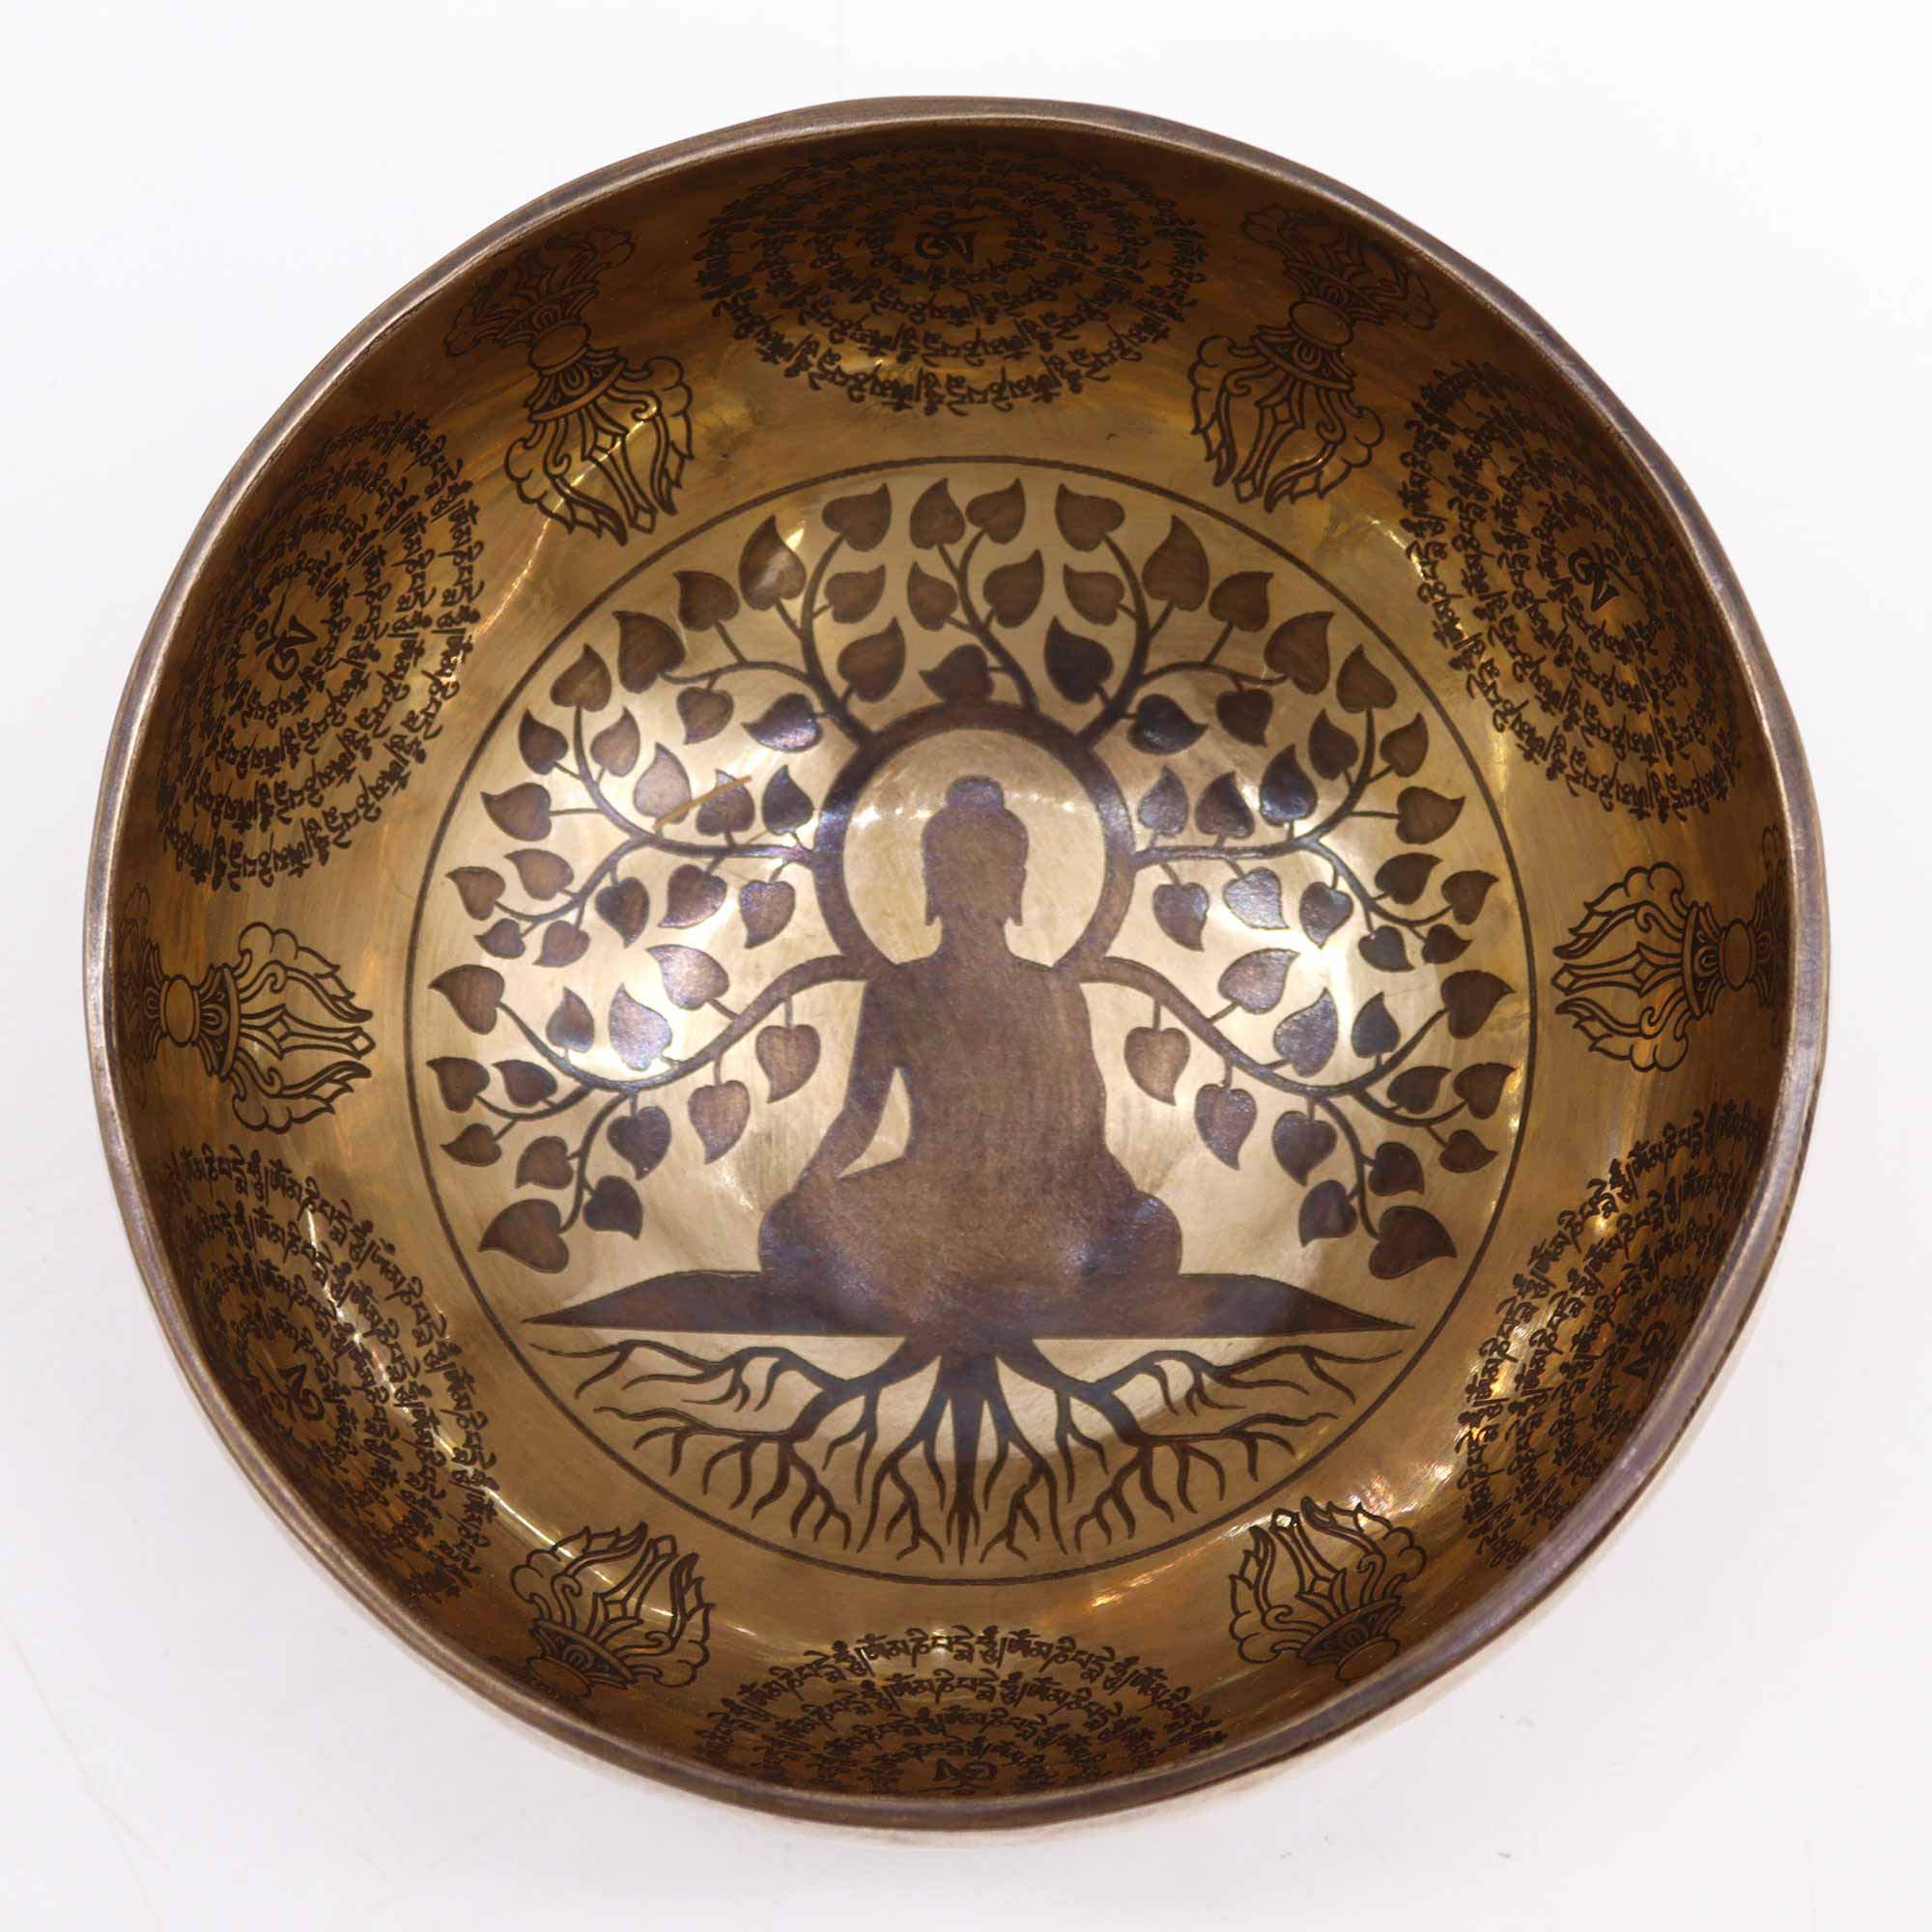 Tibetan Healing Engraved Bowl - 6.3" - Bodhi Tree Buddha